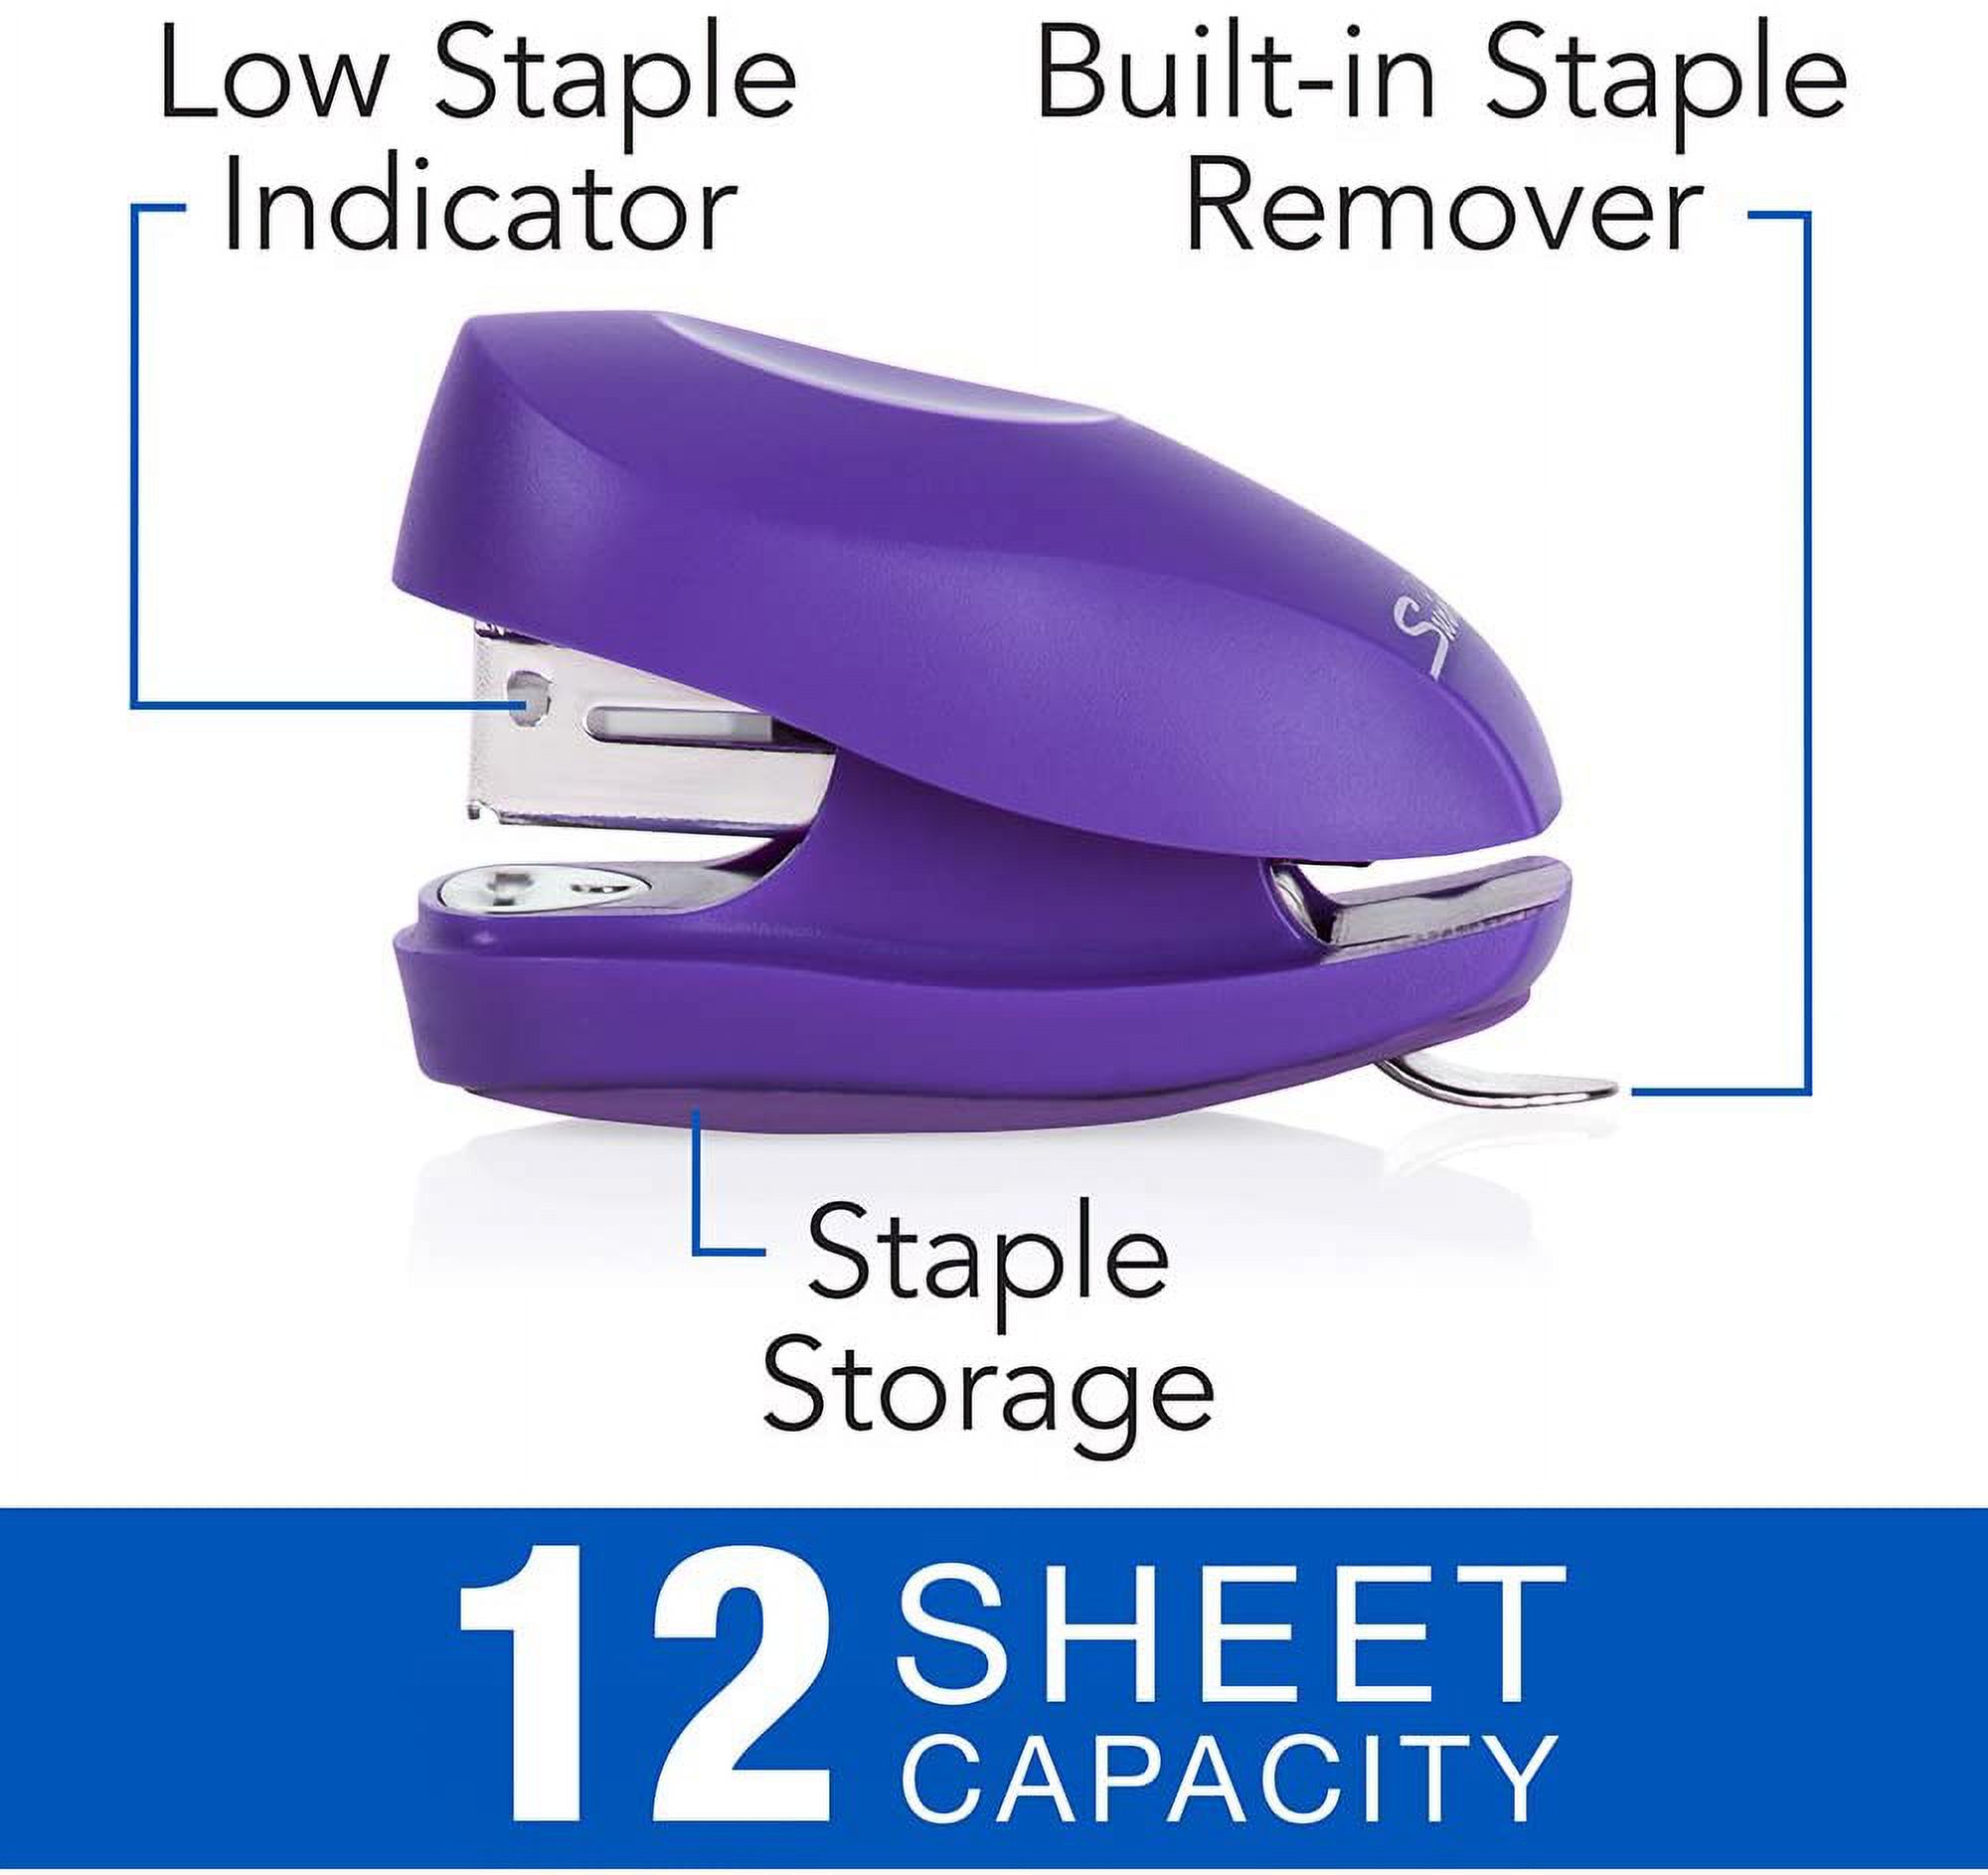 Swingline Mini Stapler Tot 12 Sheet Capacity Includes Built-In Staple Remover & 1000 Standard Staples Purple - S7079173